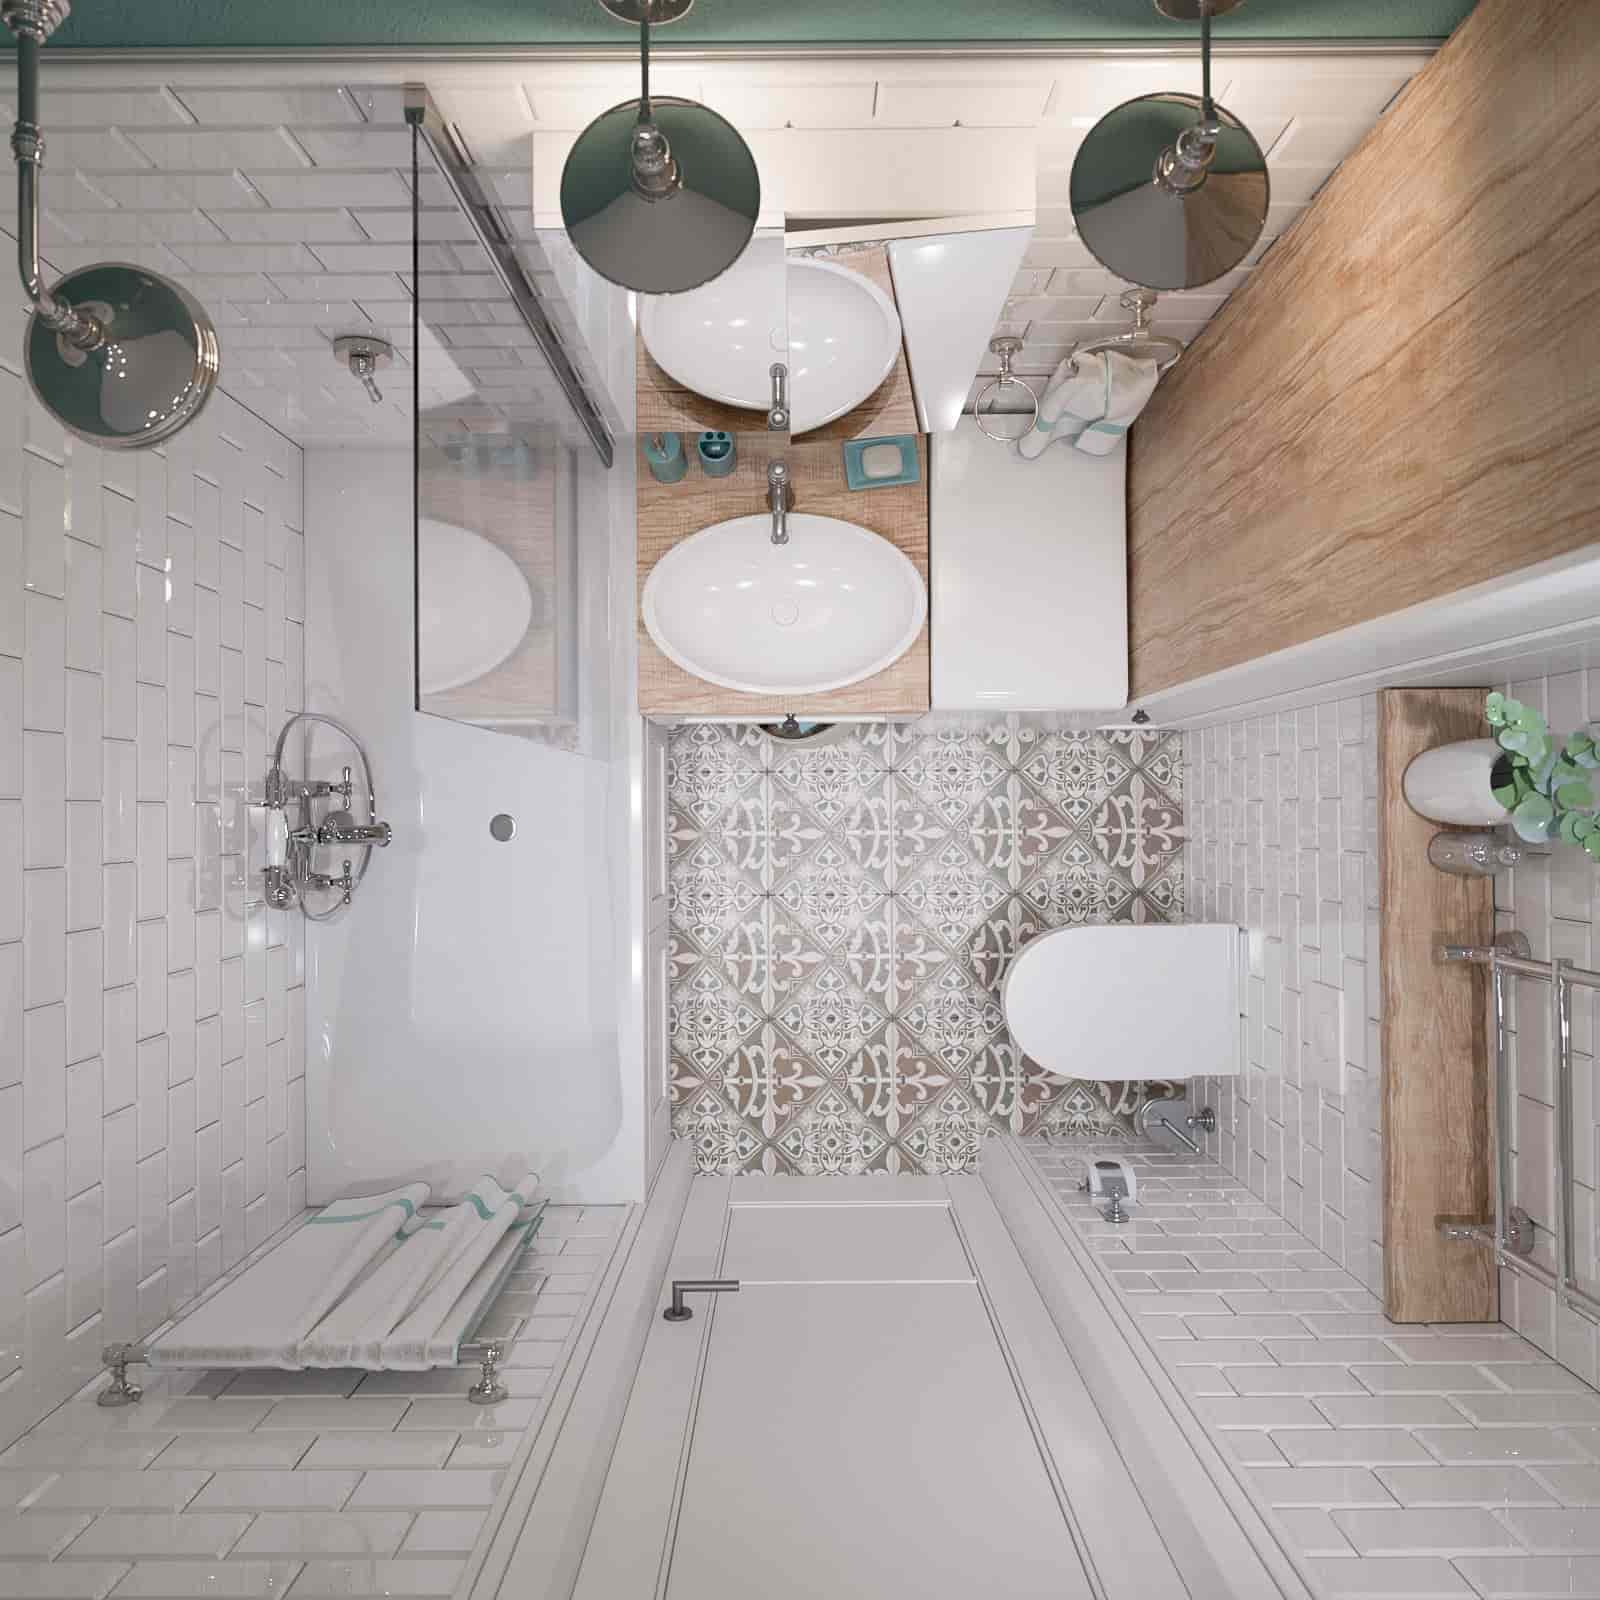 Tương tự một mẫu nhà vệ sinh và phòng tắm đẹp cũng với 3 sản phẩm cơ bản, được bố trí khoa học, và tông màu trắng sáng giúp tạo cảm giác không gian như mở rộng hơn.